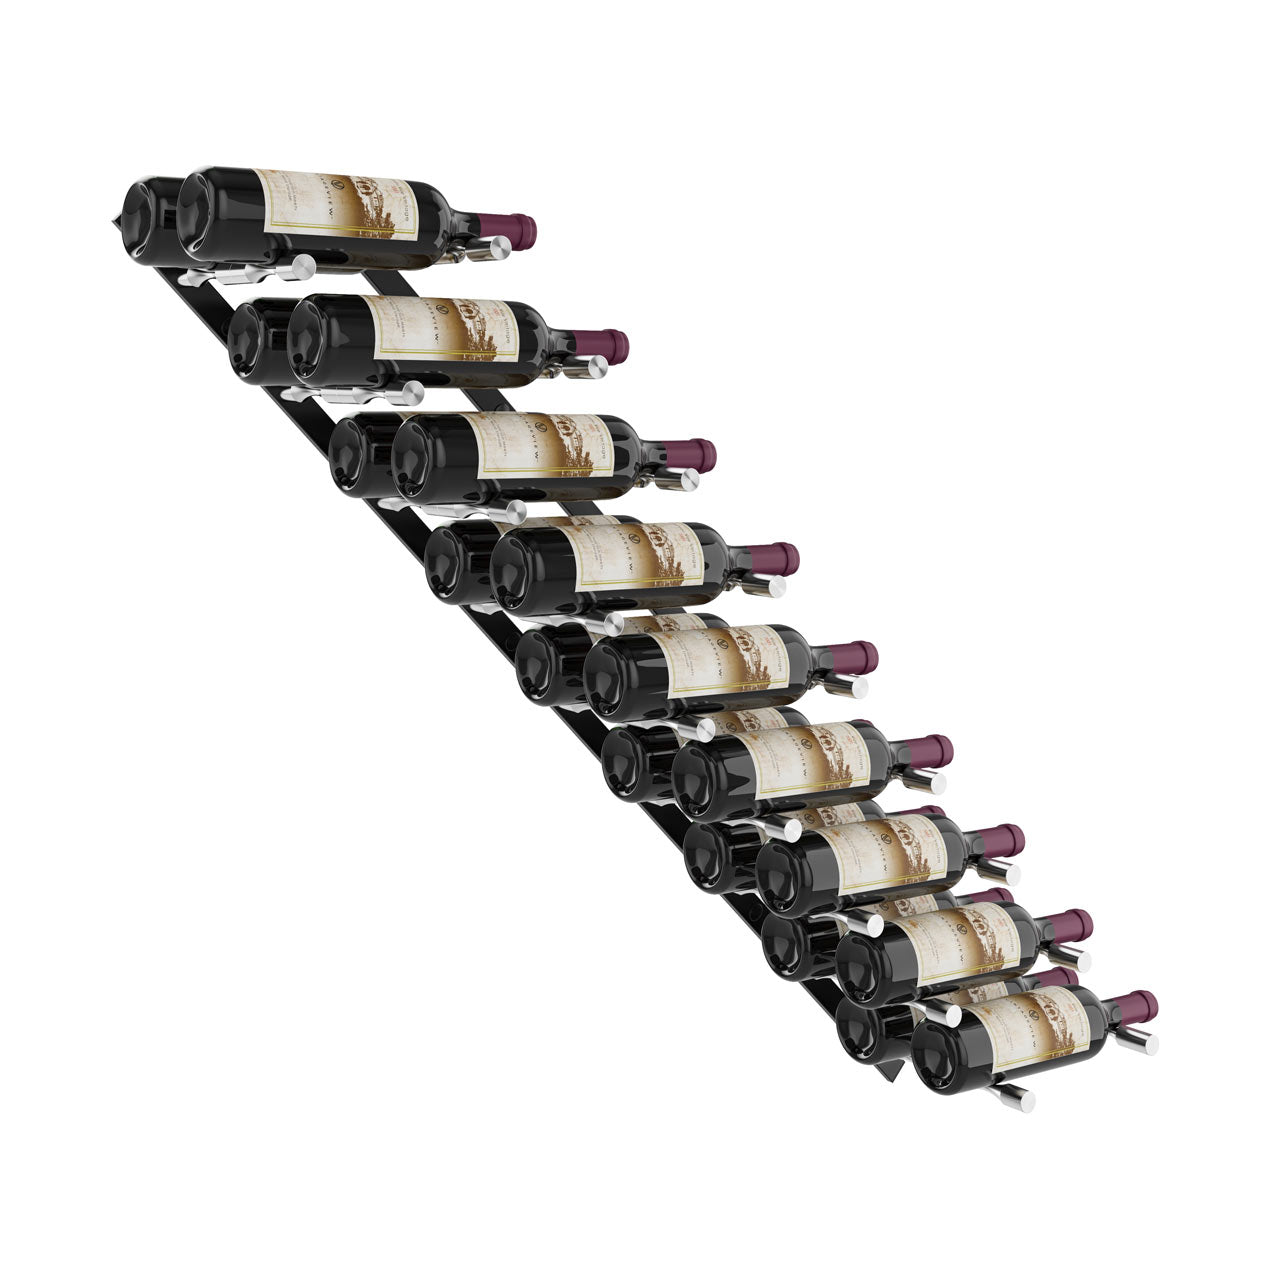 Vino Pins Metal Wine Rack - Wall Mounted Wine Racks by VintageView